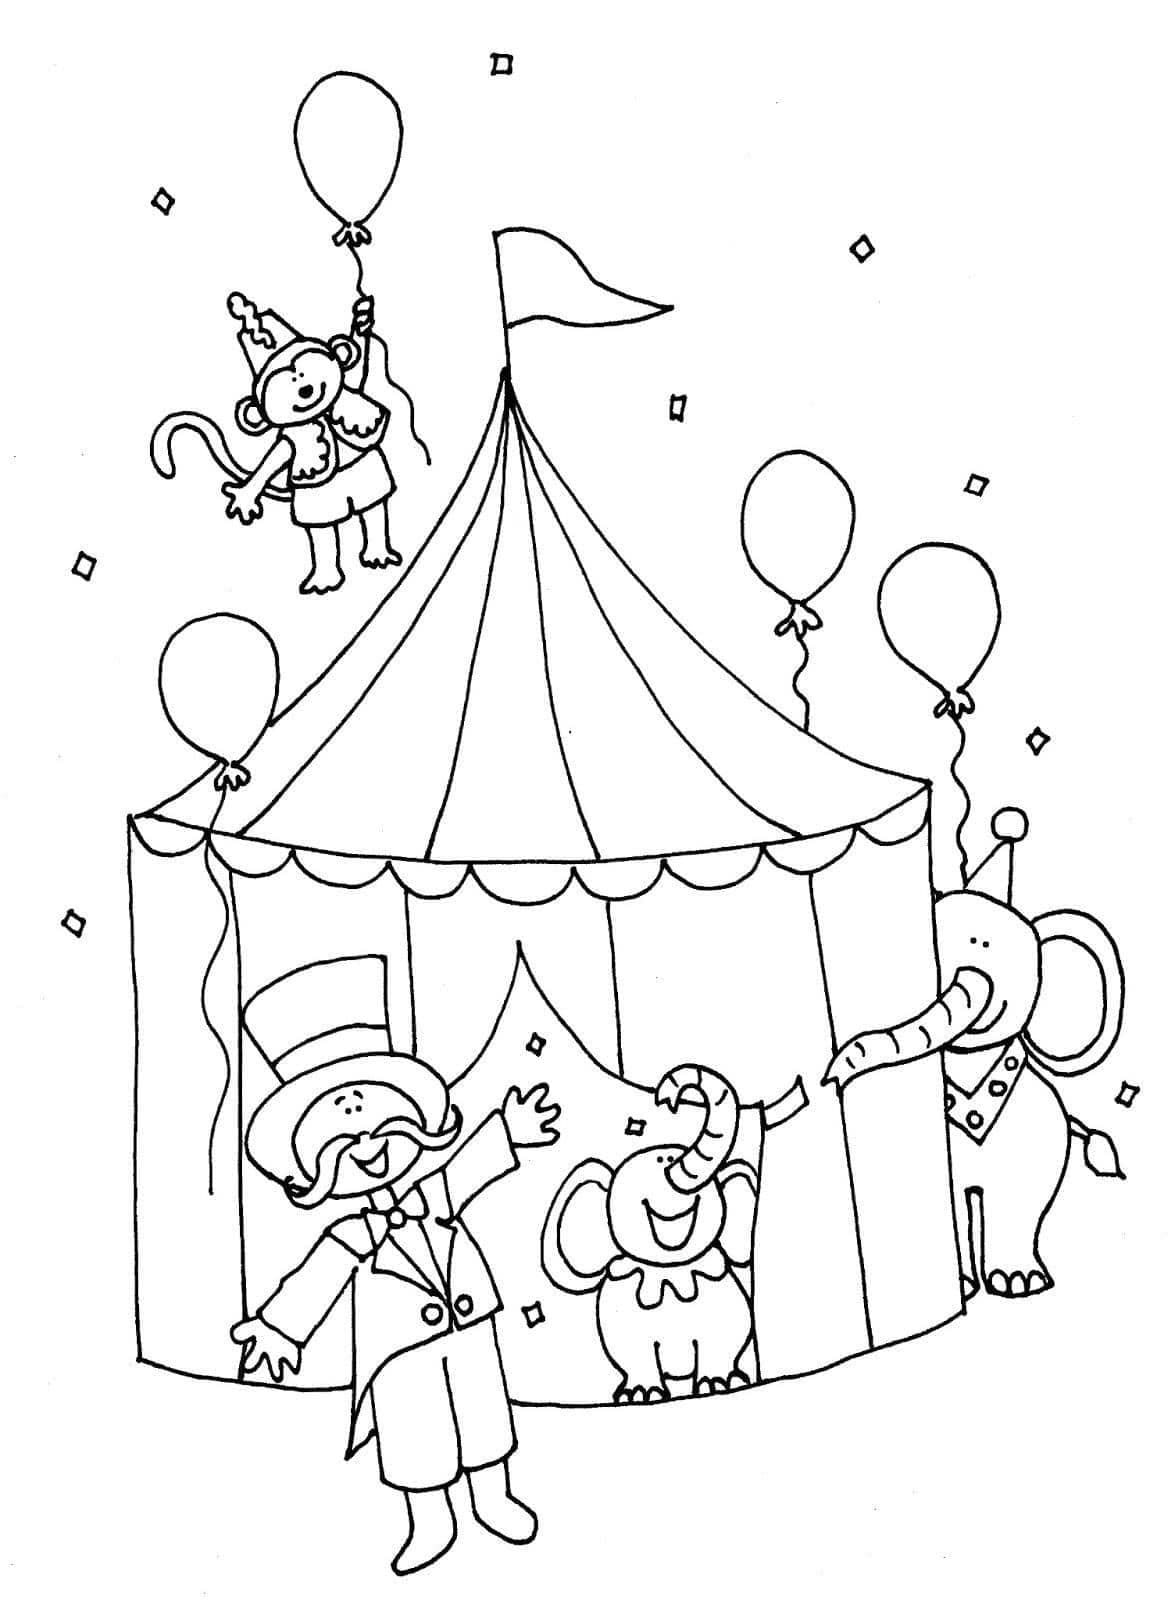 Adorable Cirque coloring page